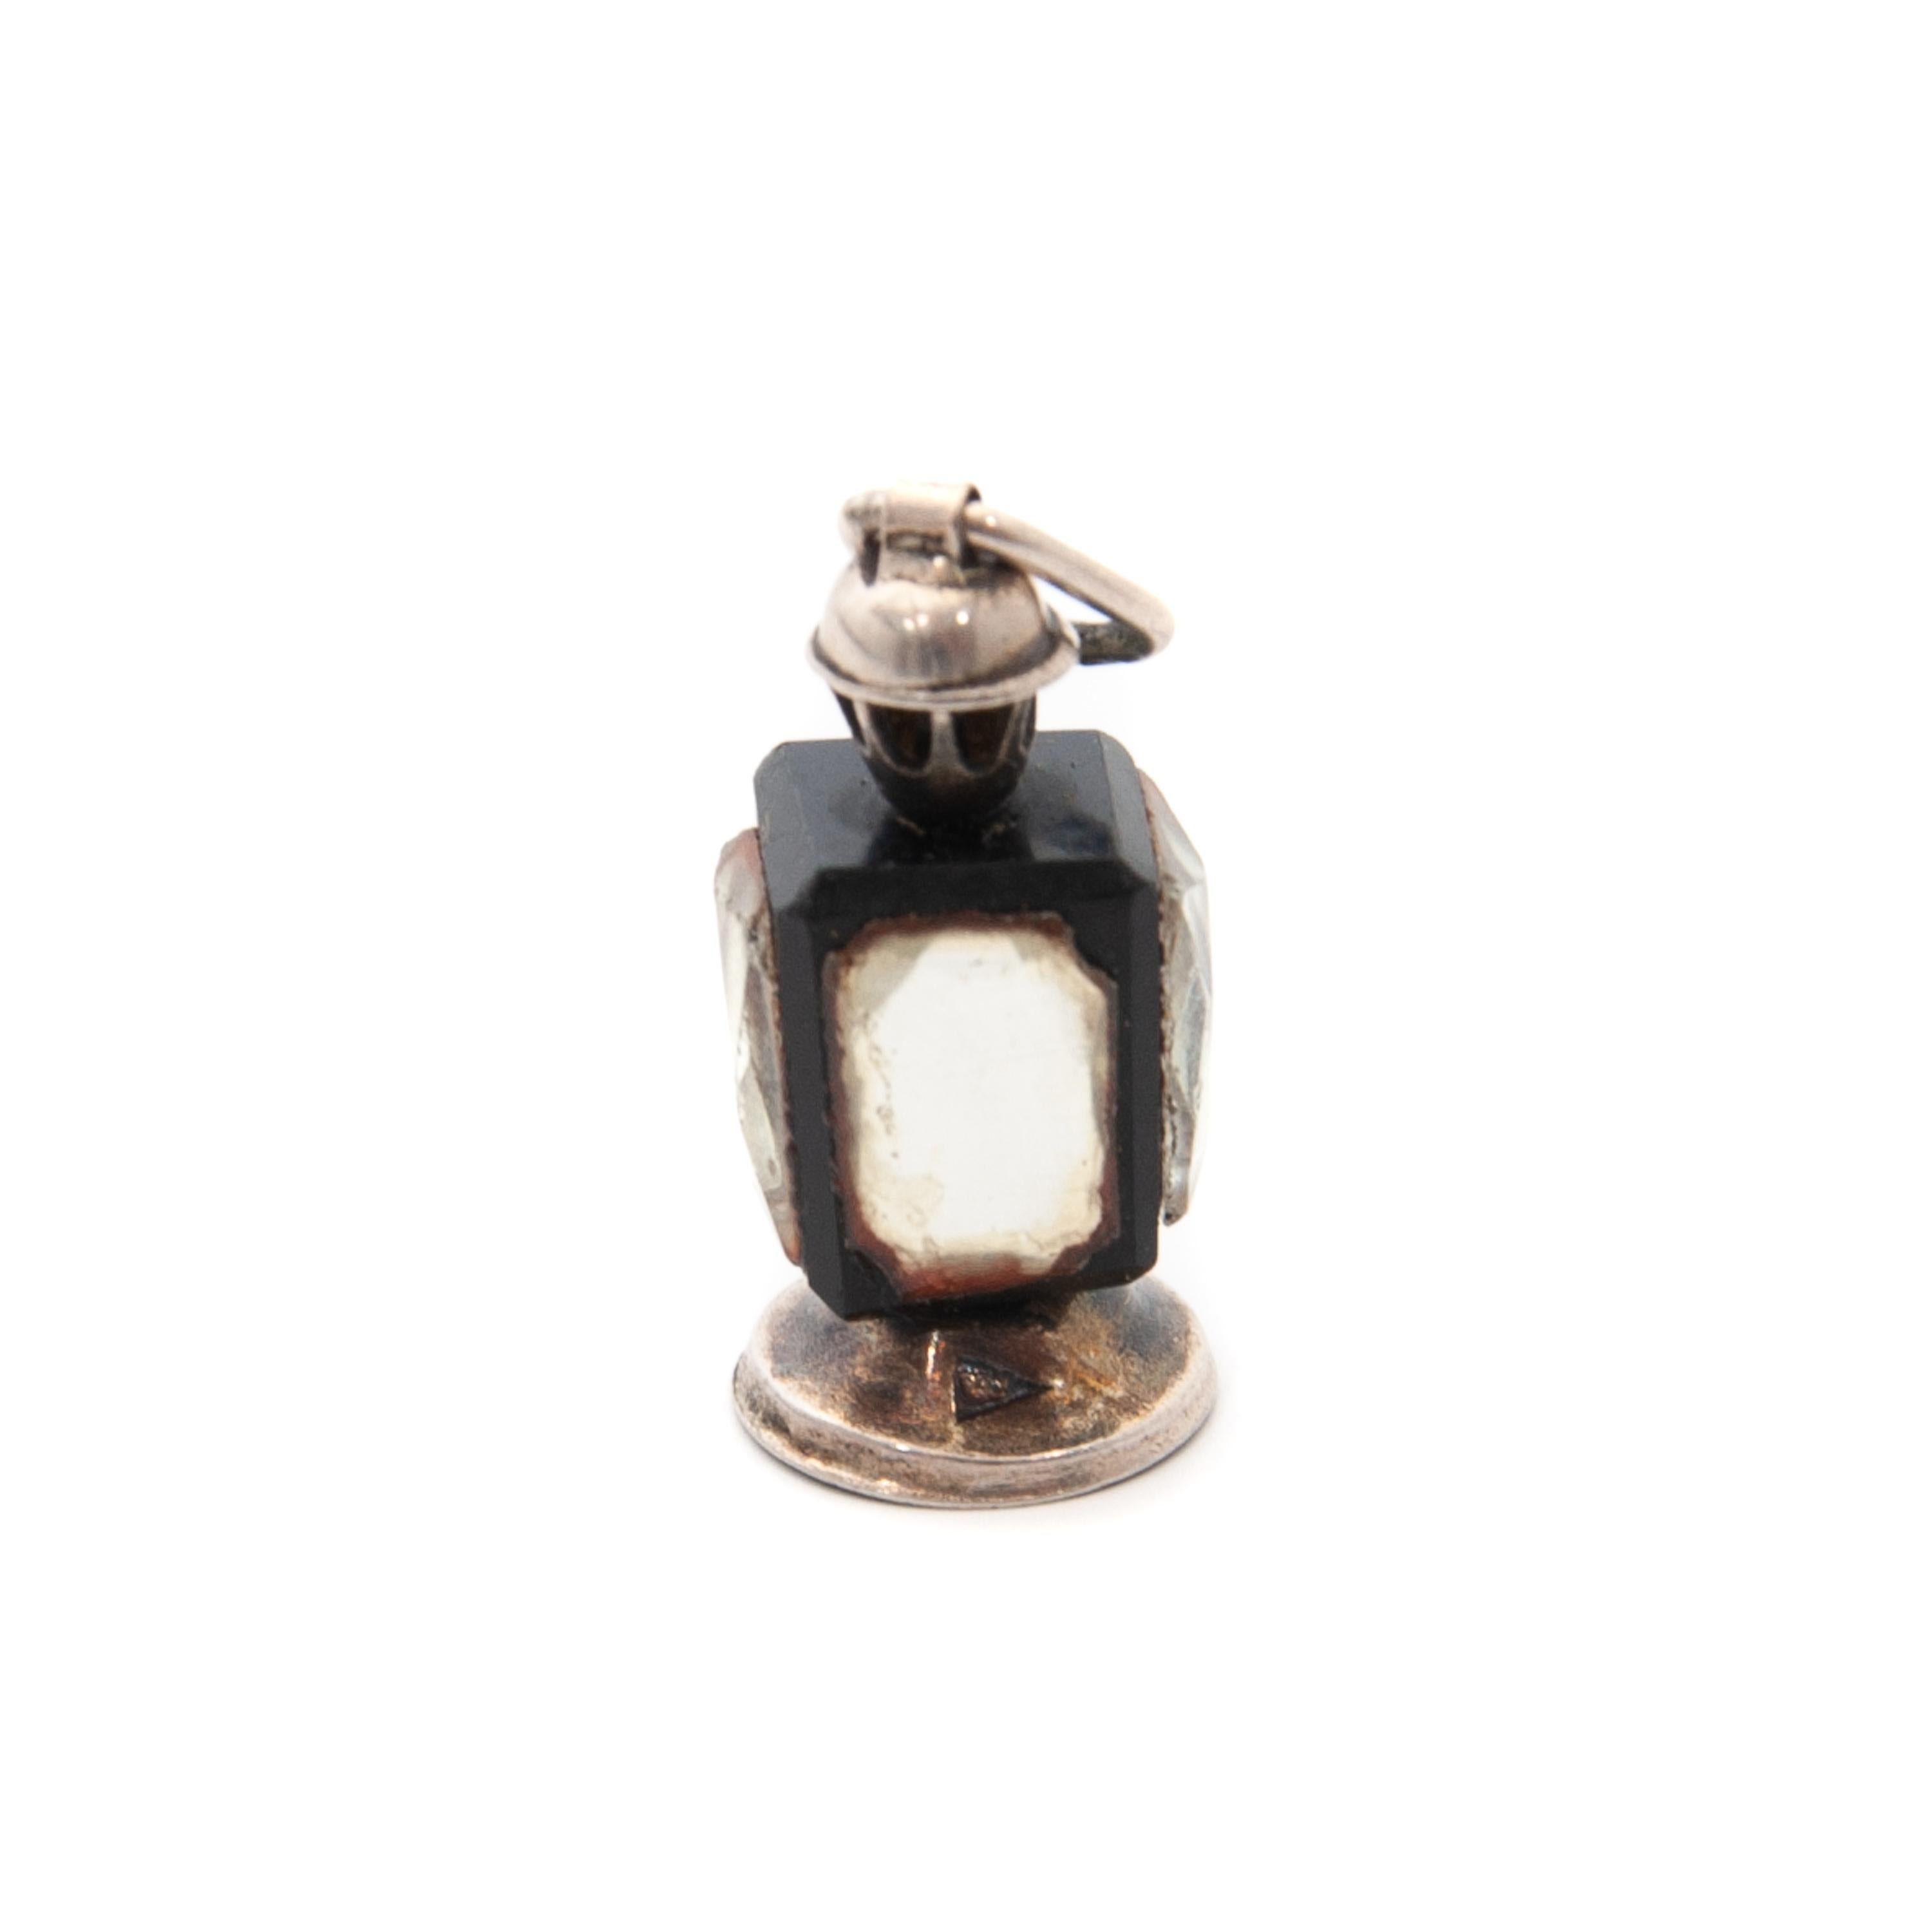 Vintage Lantern Charm Silver Charm Pendant 2